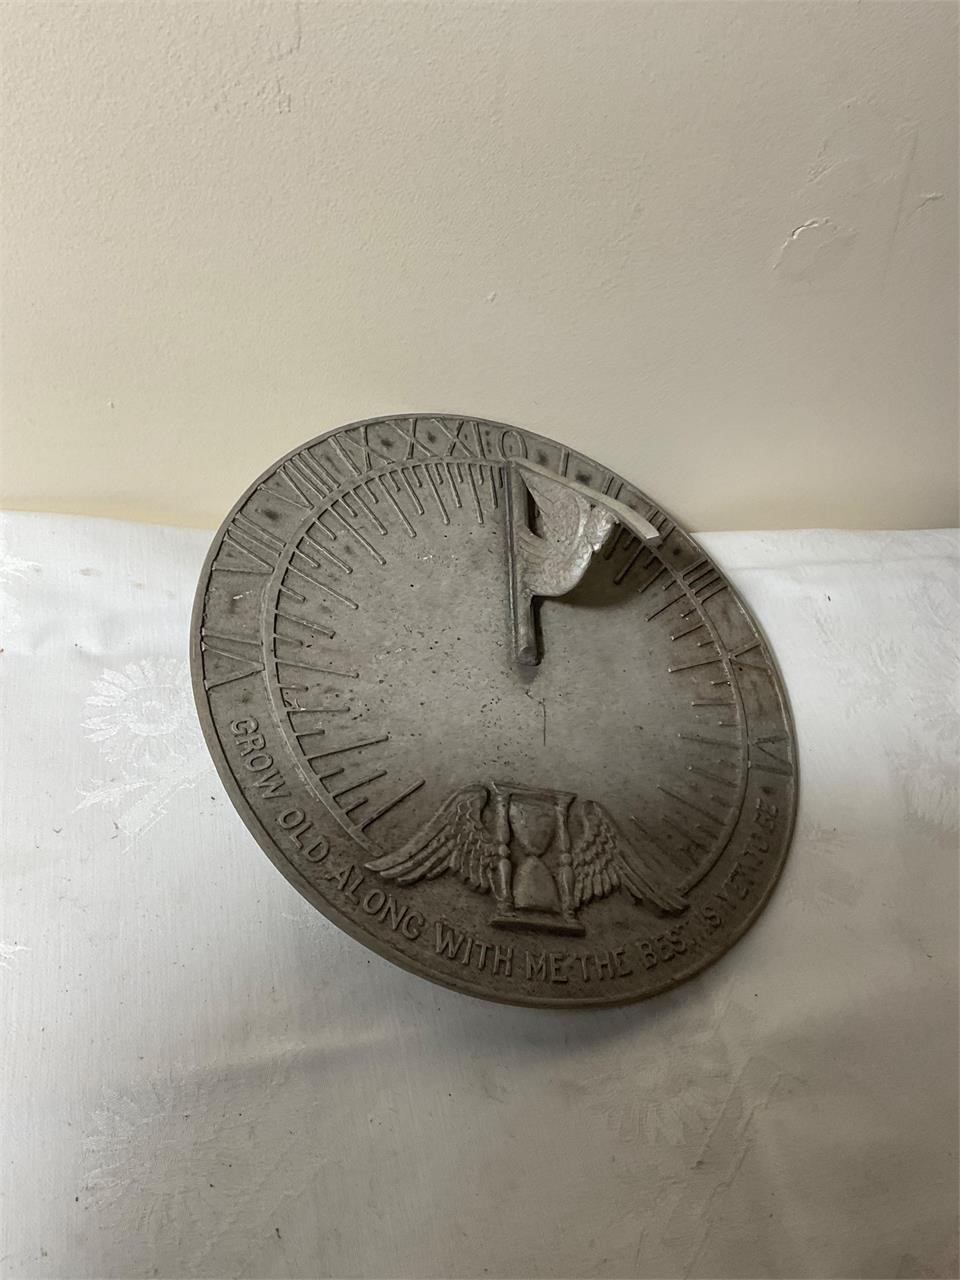 Antique metal sundial